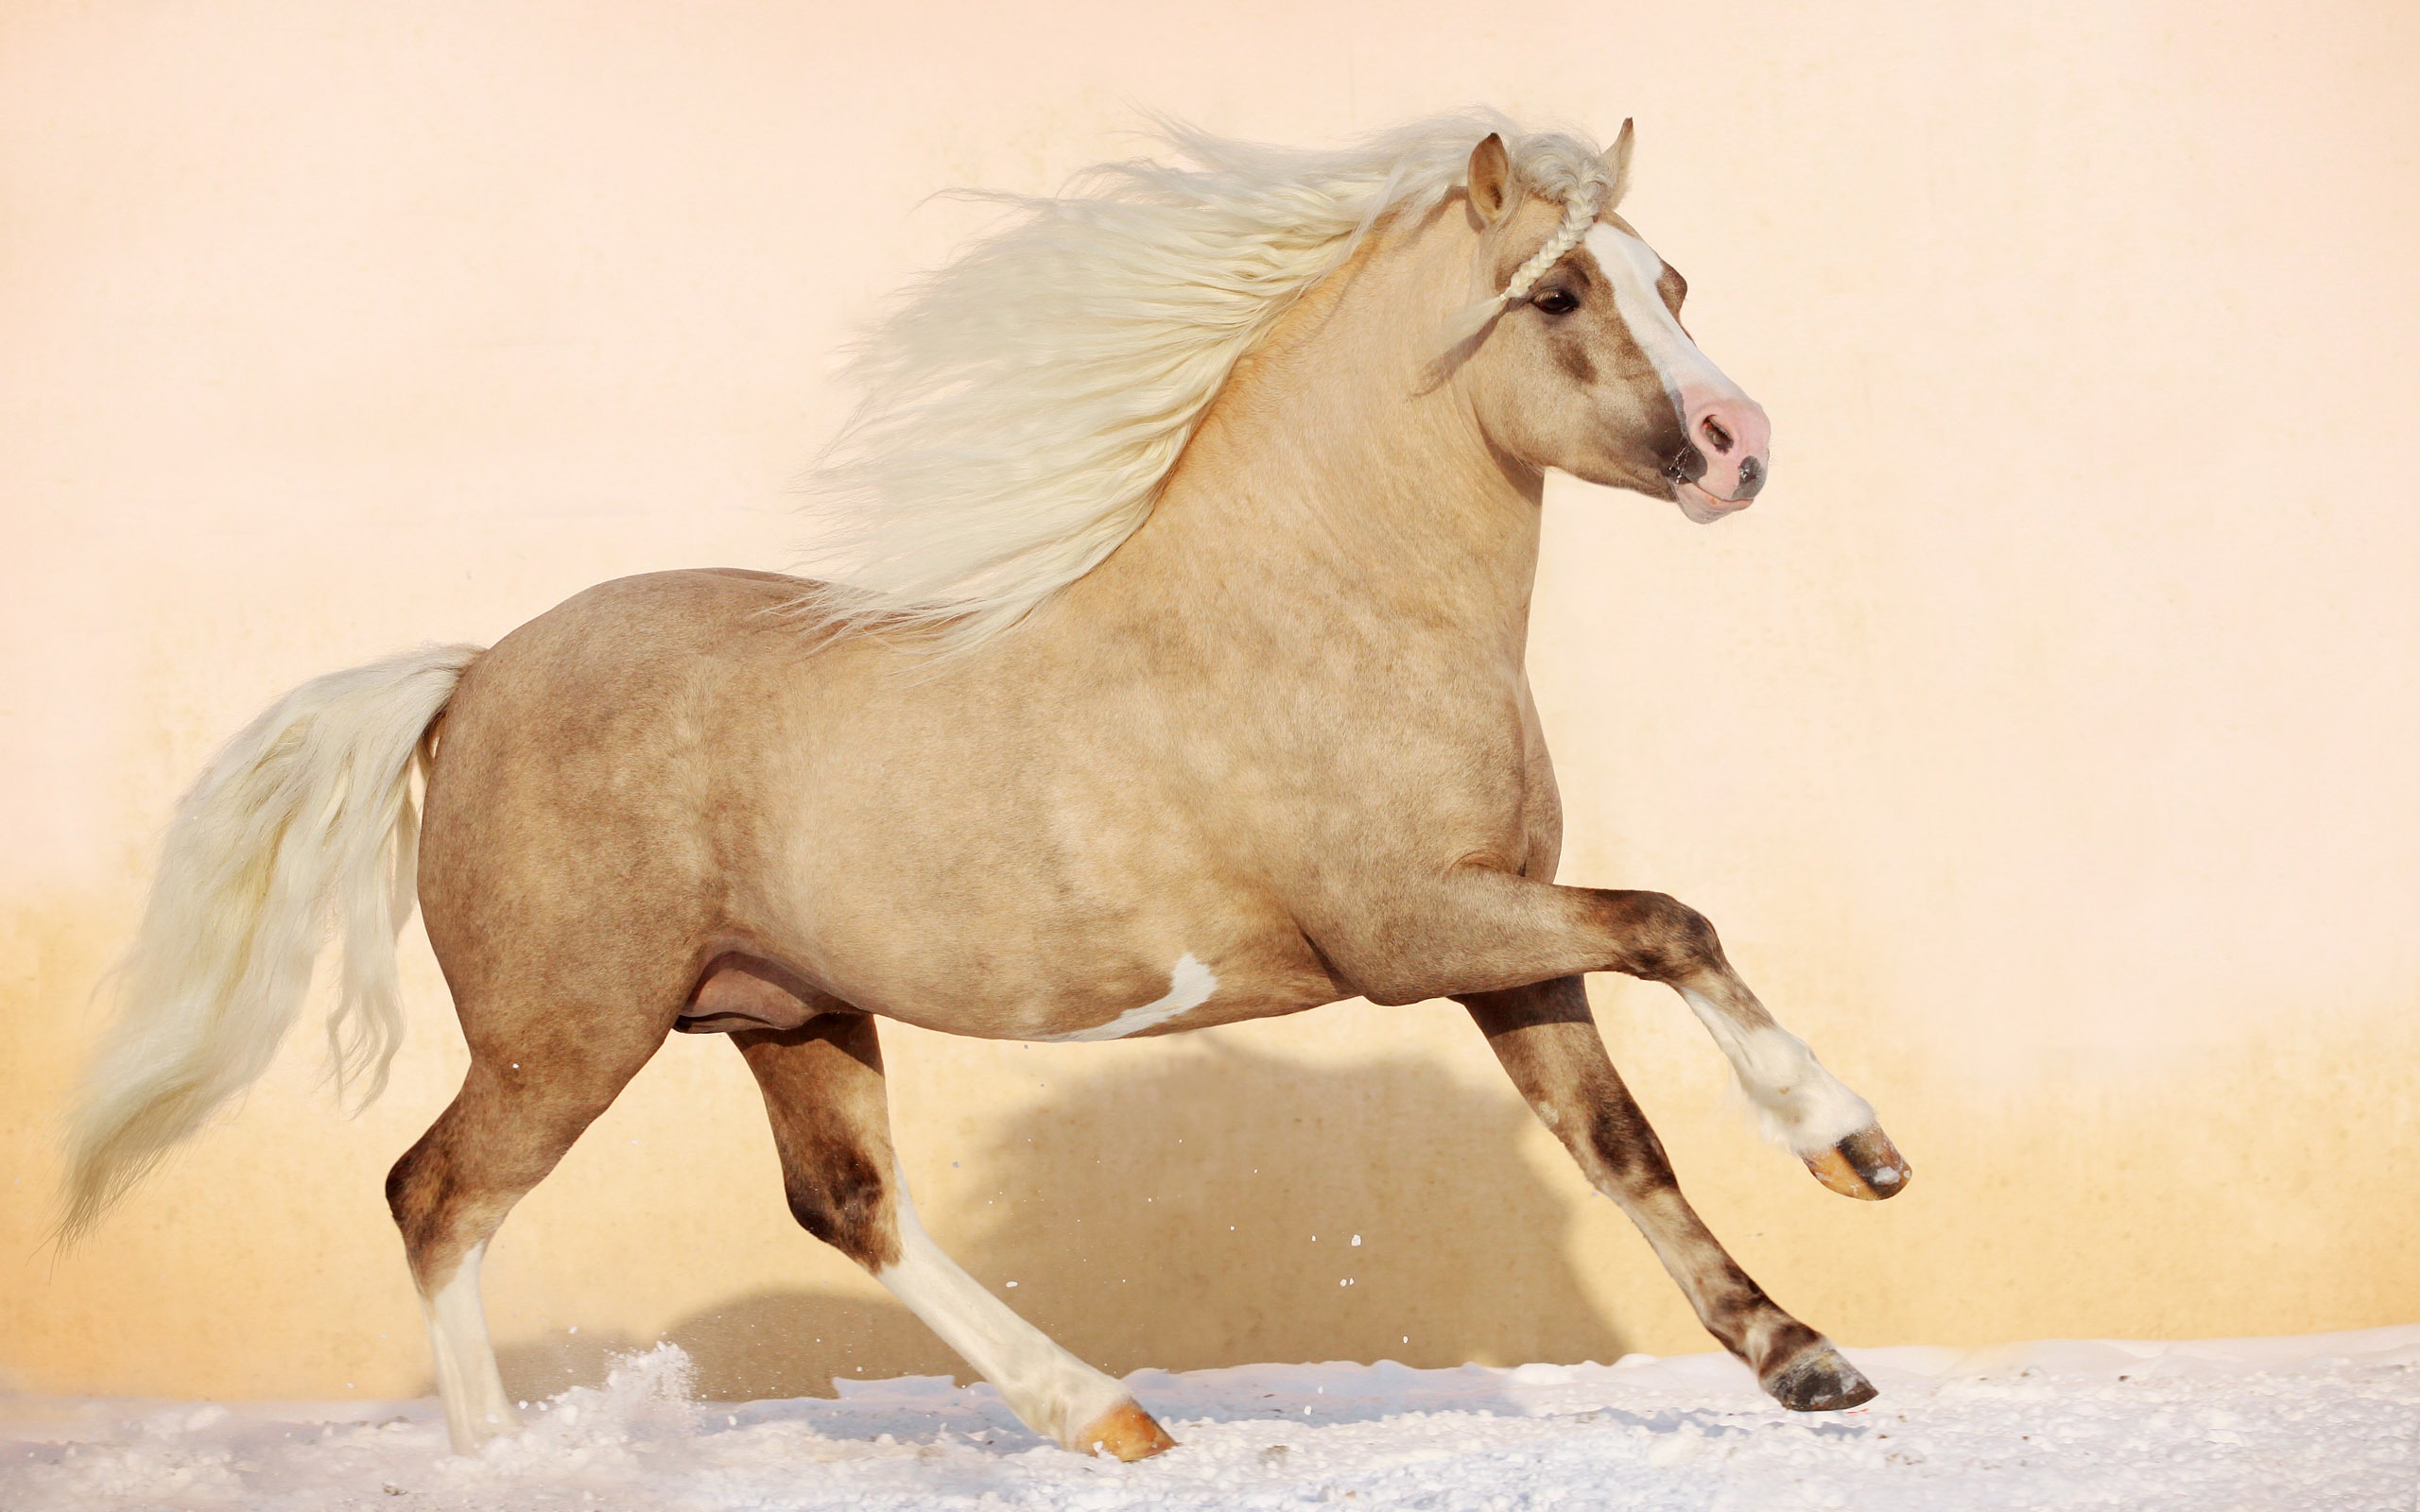 Super horse photo wallpaper (1) #10 - 2560x1600